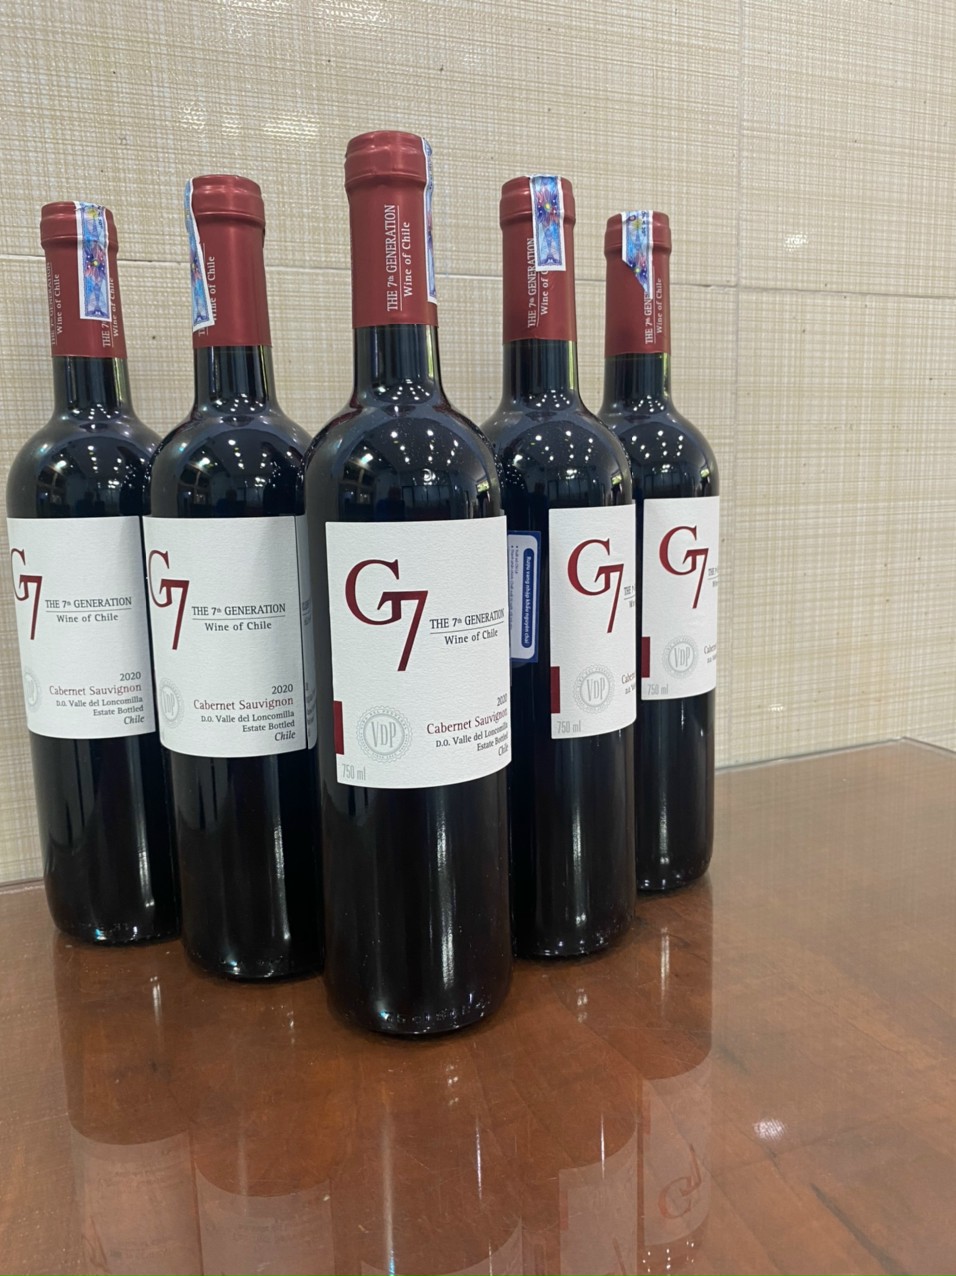 Rượu Vang G7